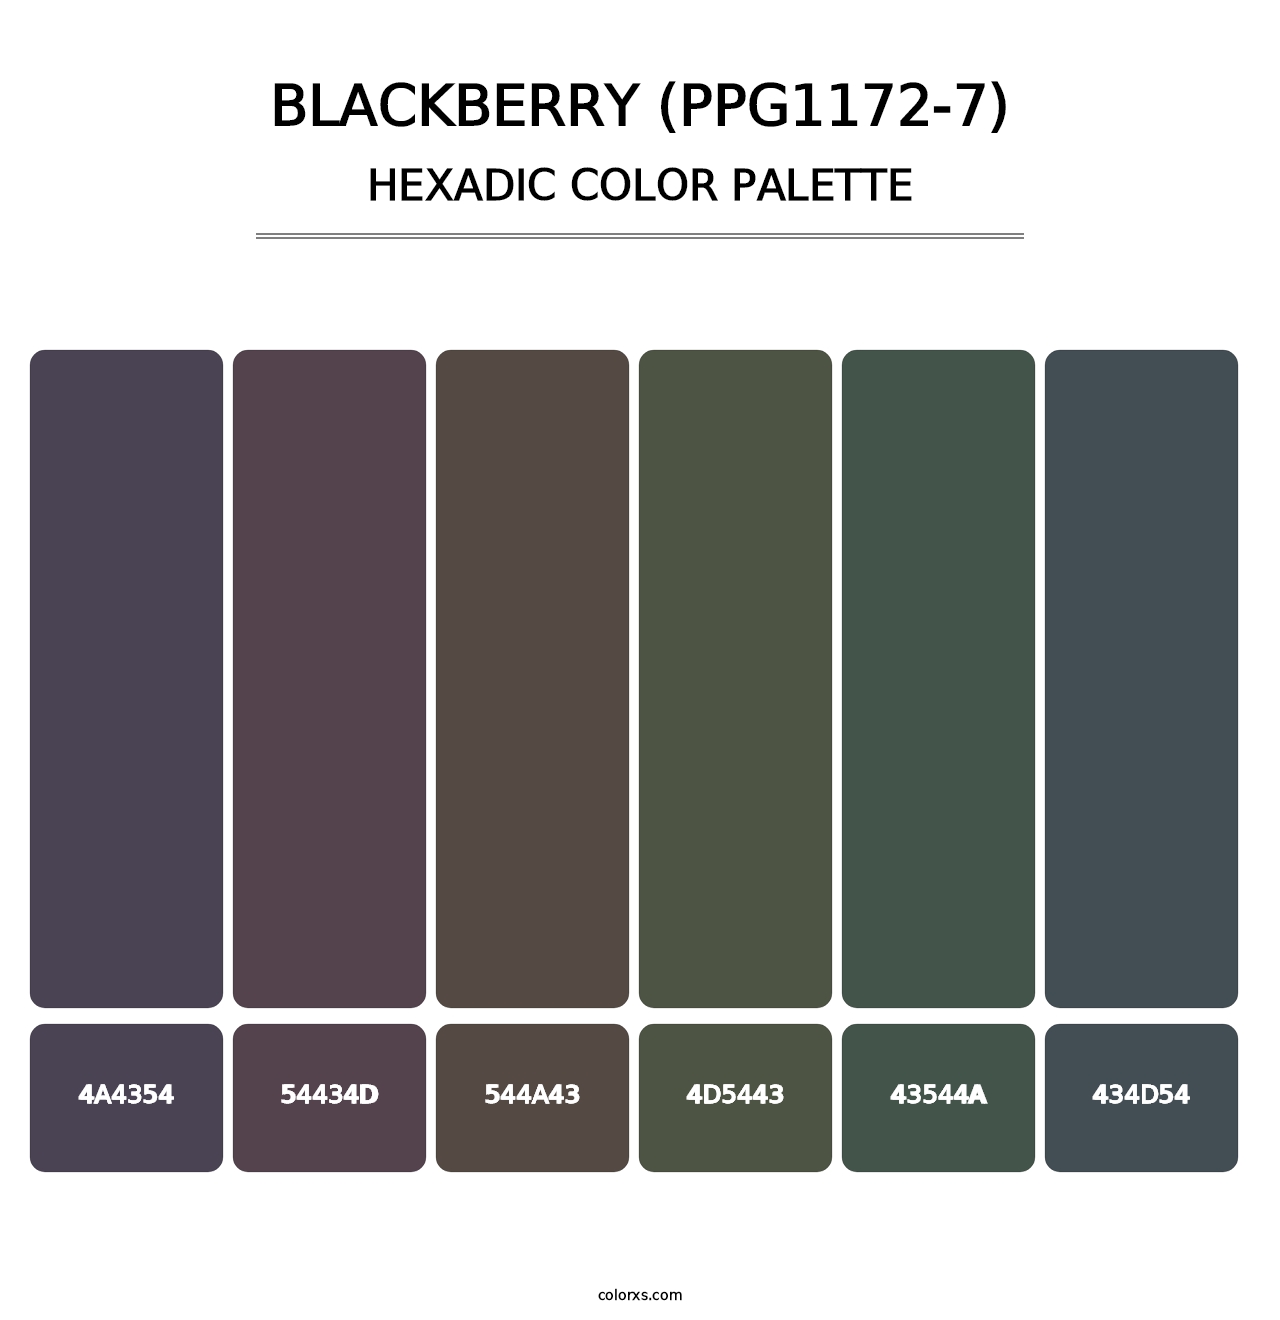 Blackberry (PPG1172-7) - Hexadic Color Palette